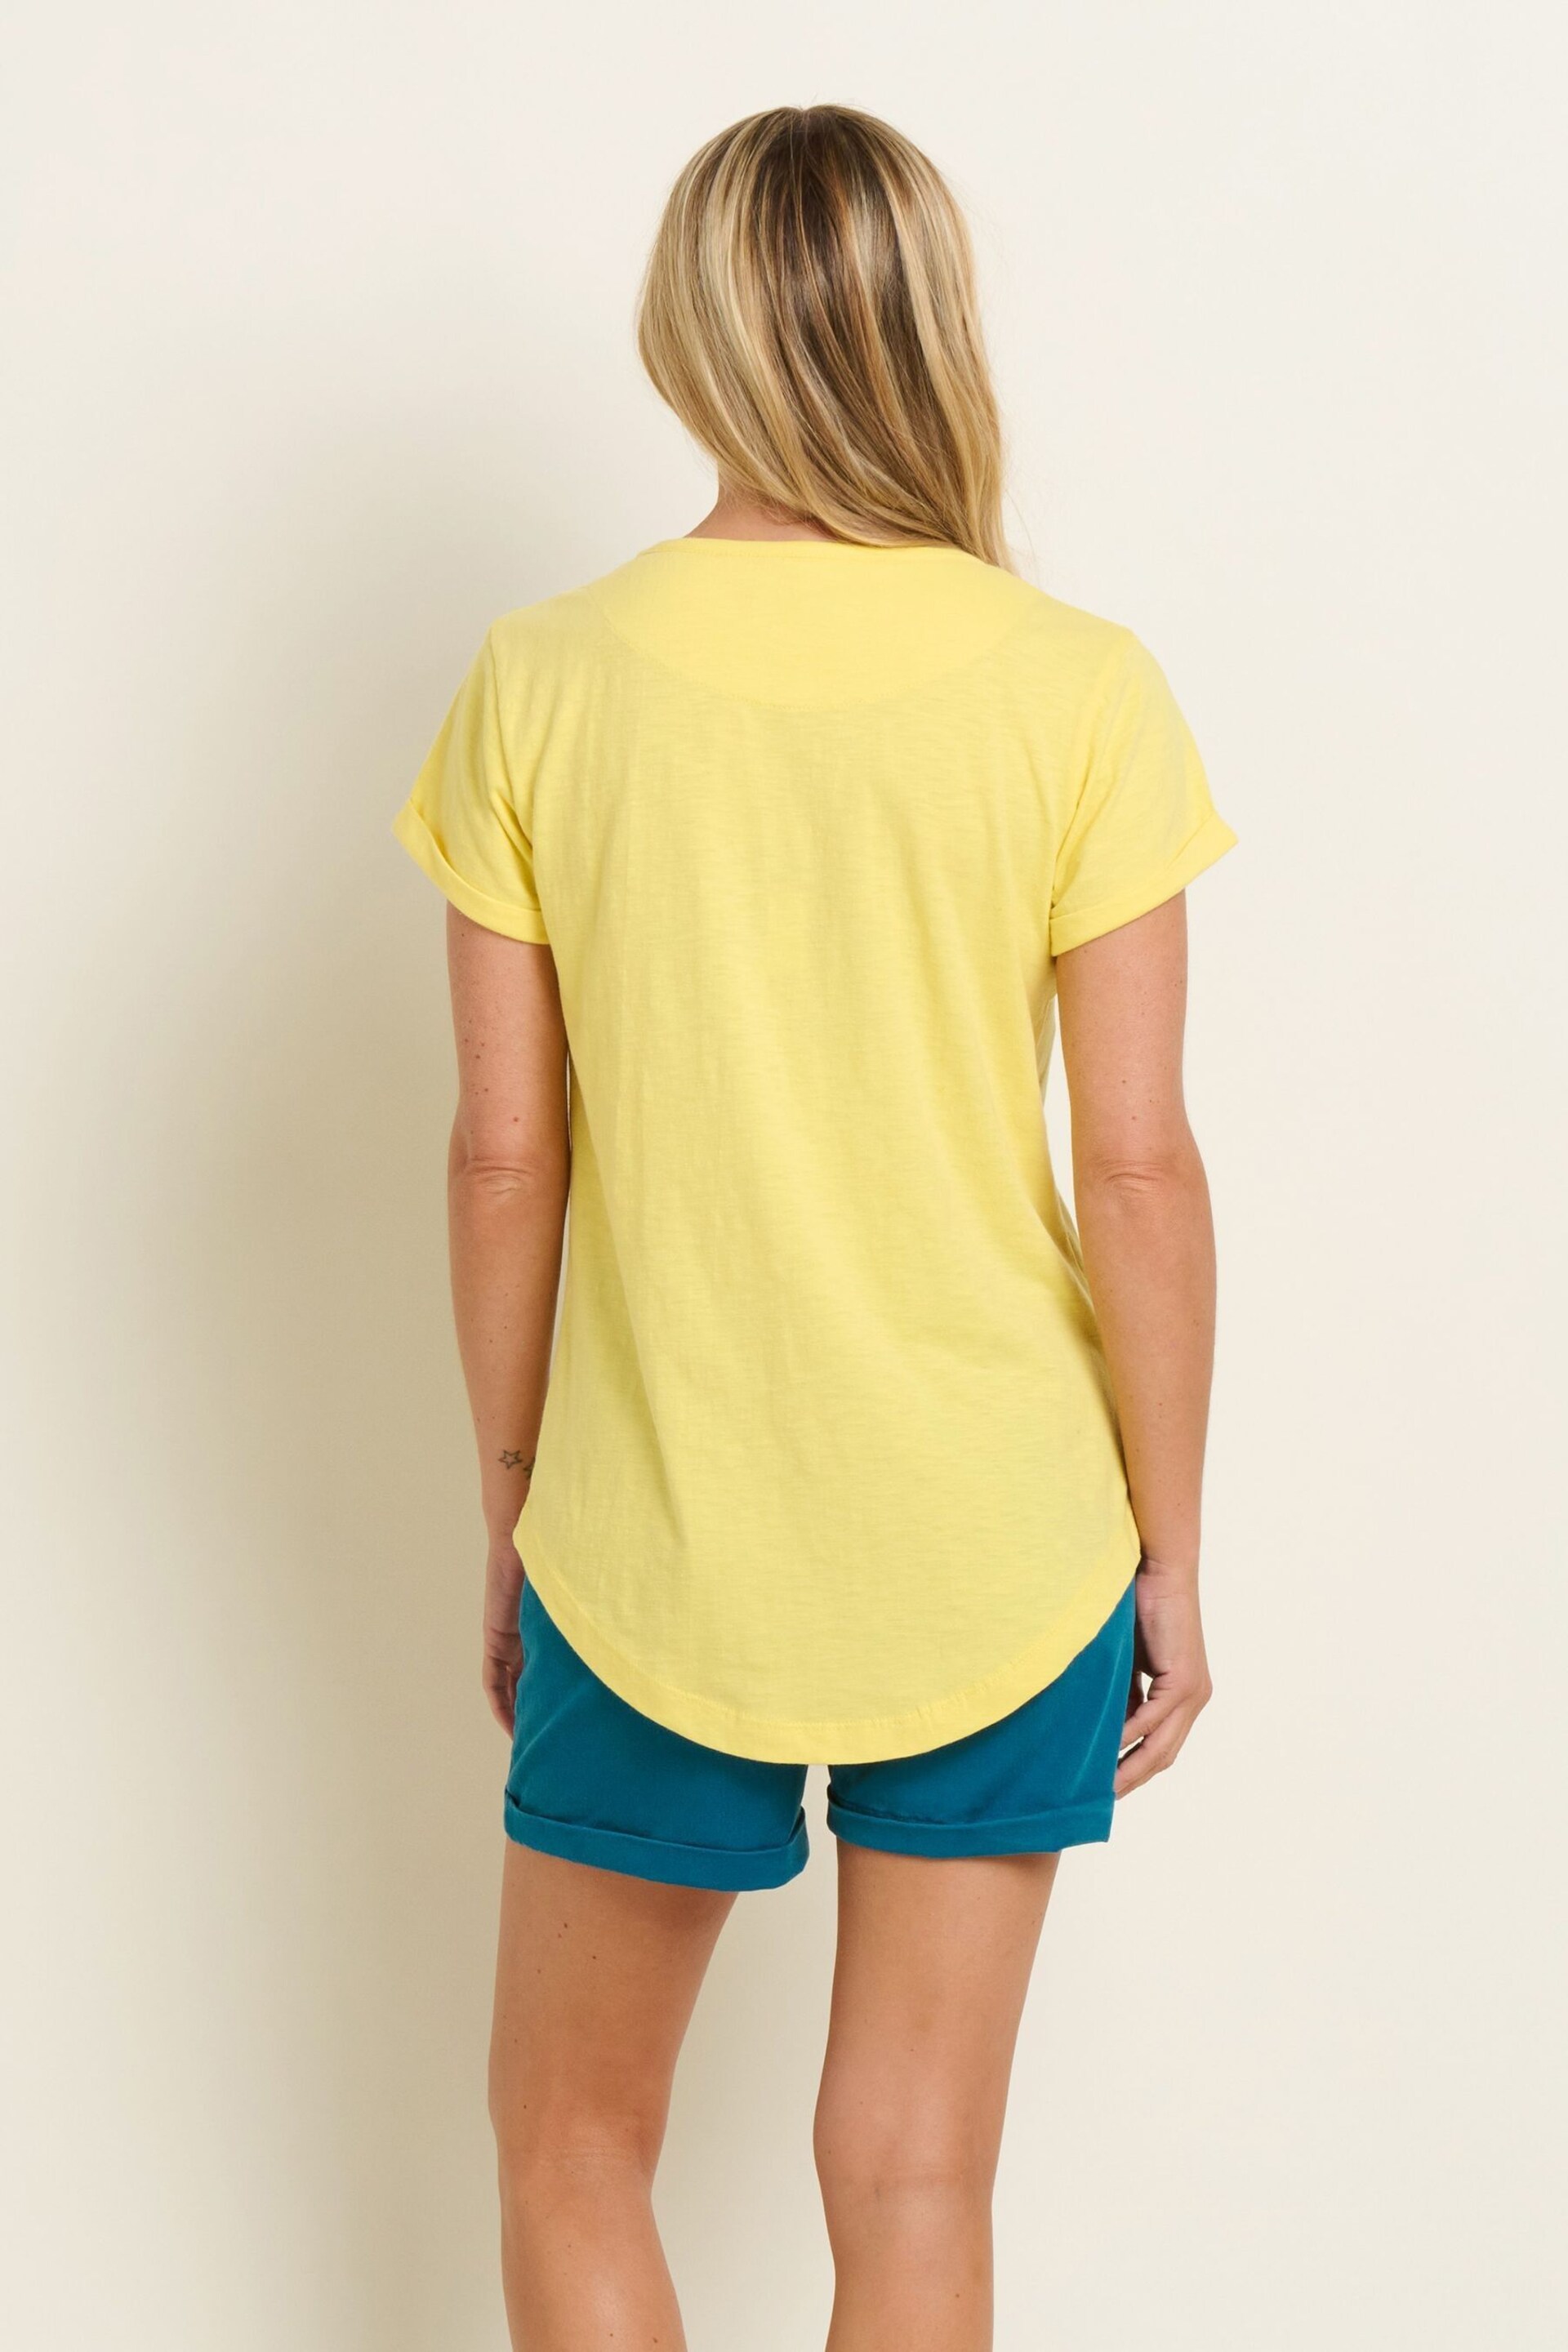 Brakeburn Yellow Shore T-Shirt - Image 2 of 5